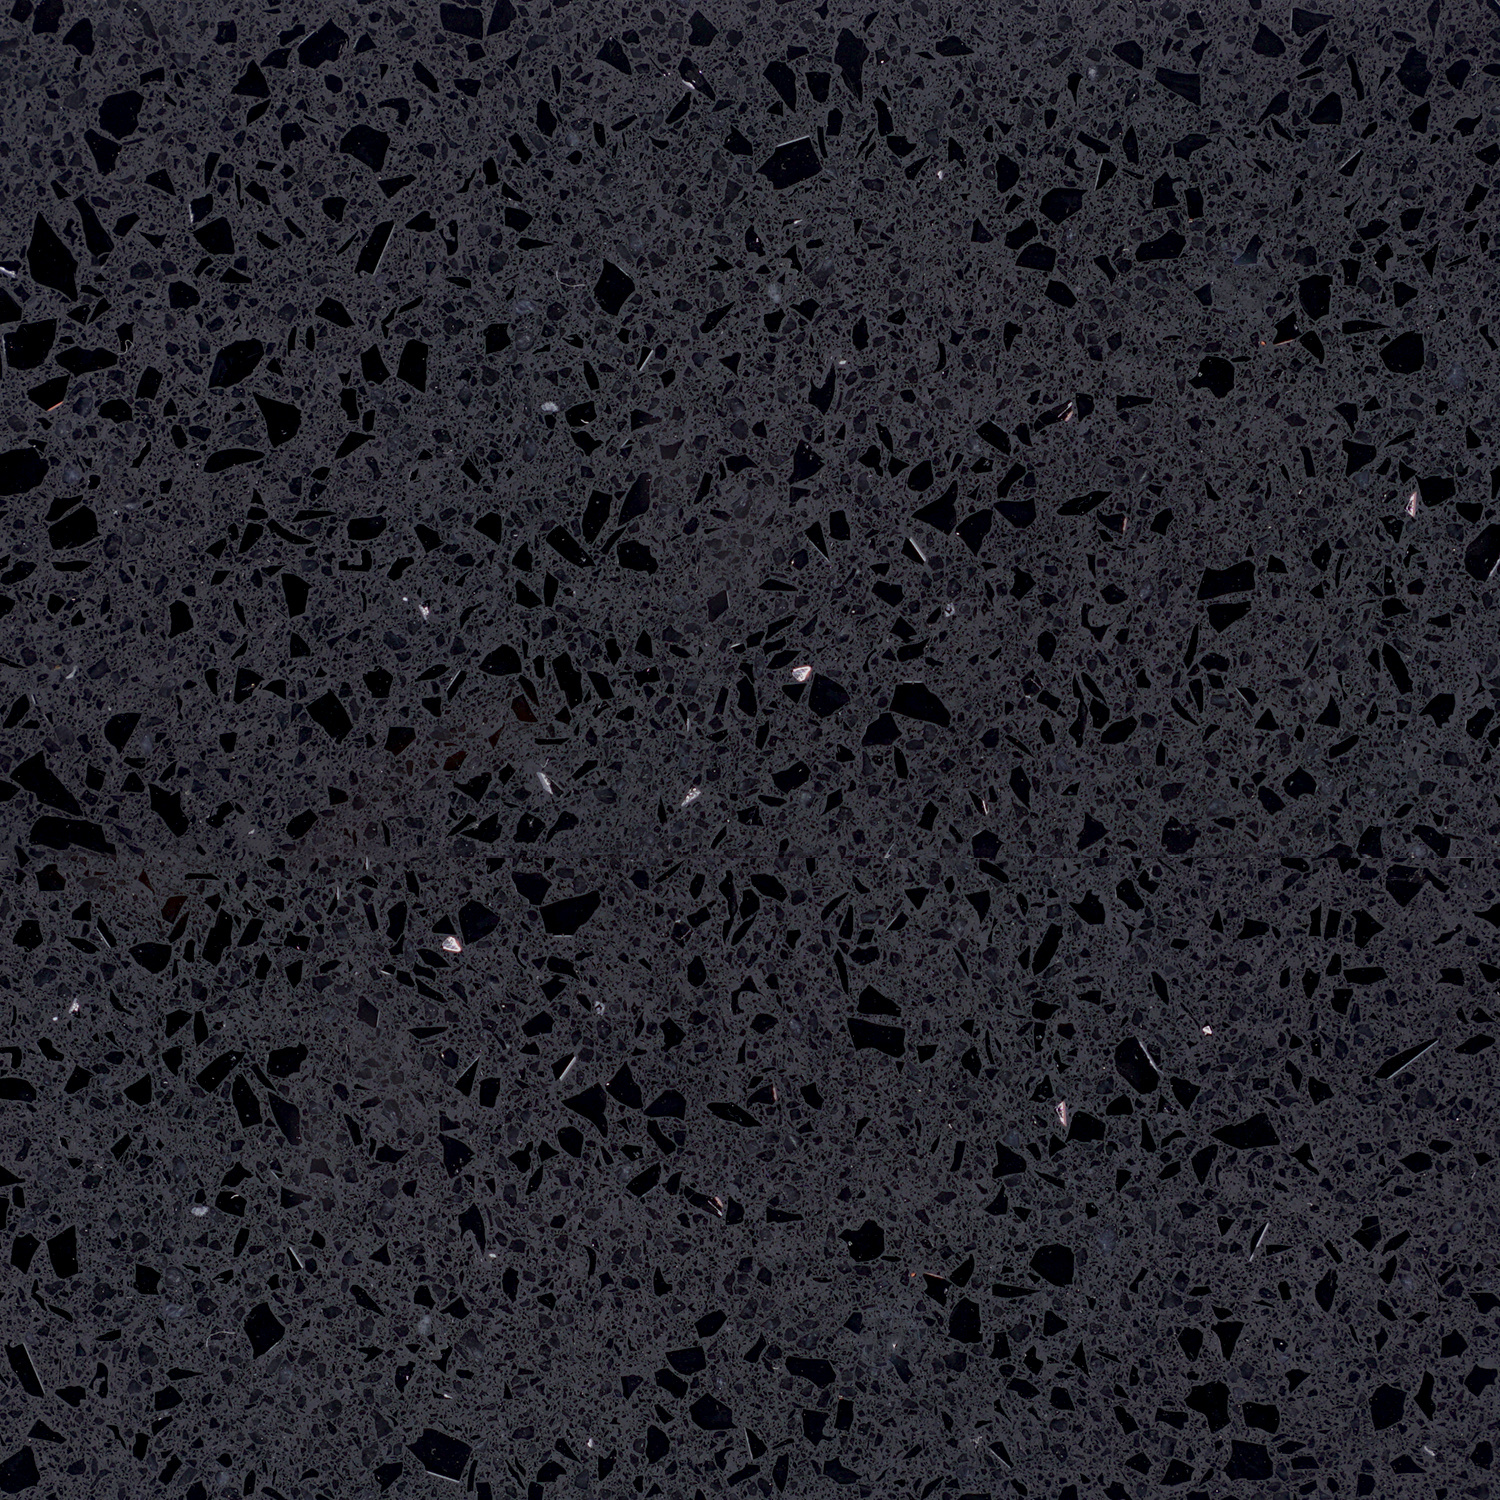  Sample Kwartscomposiet Zwart Spark 10x10x2 cm - materiaal proefstuk - monster Quartz composiet zwarte natuursteen look met glitter